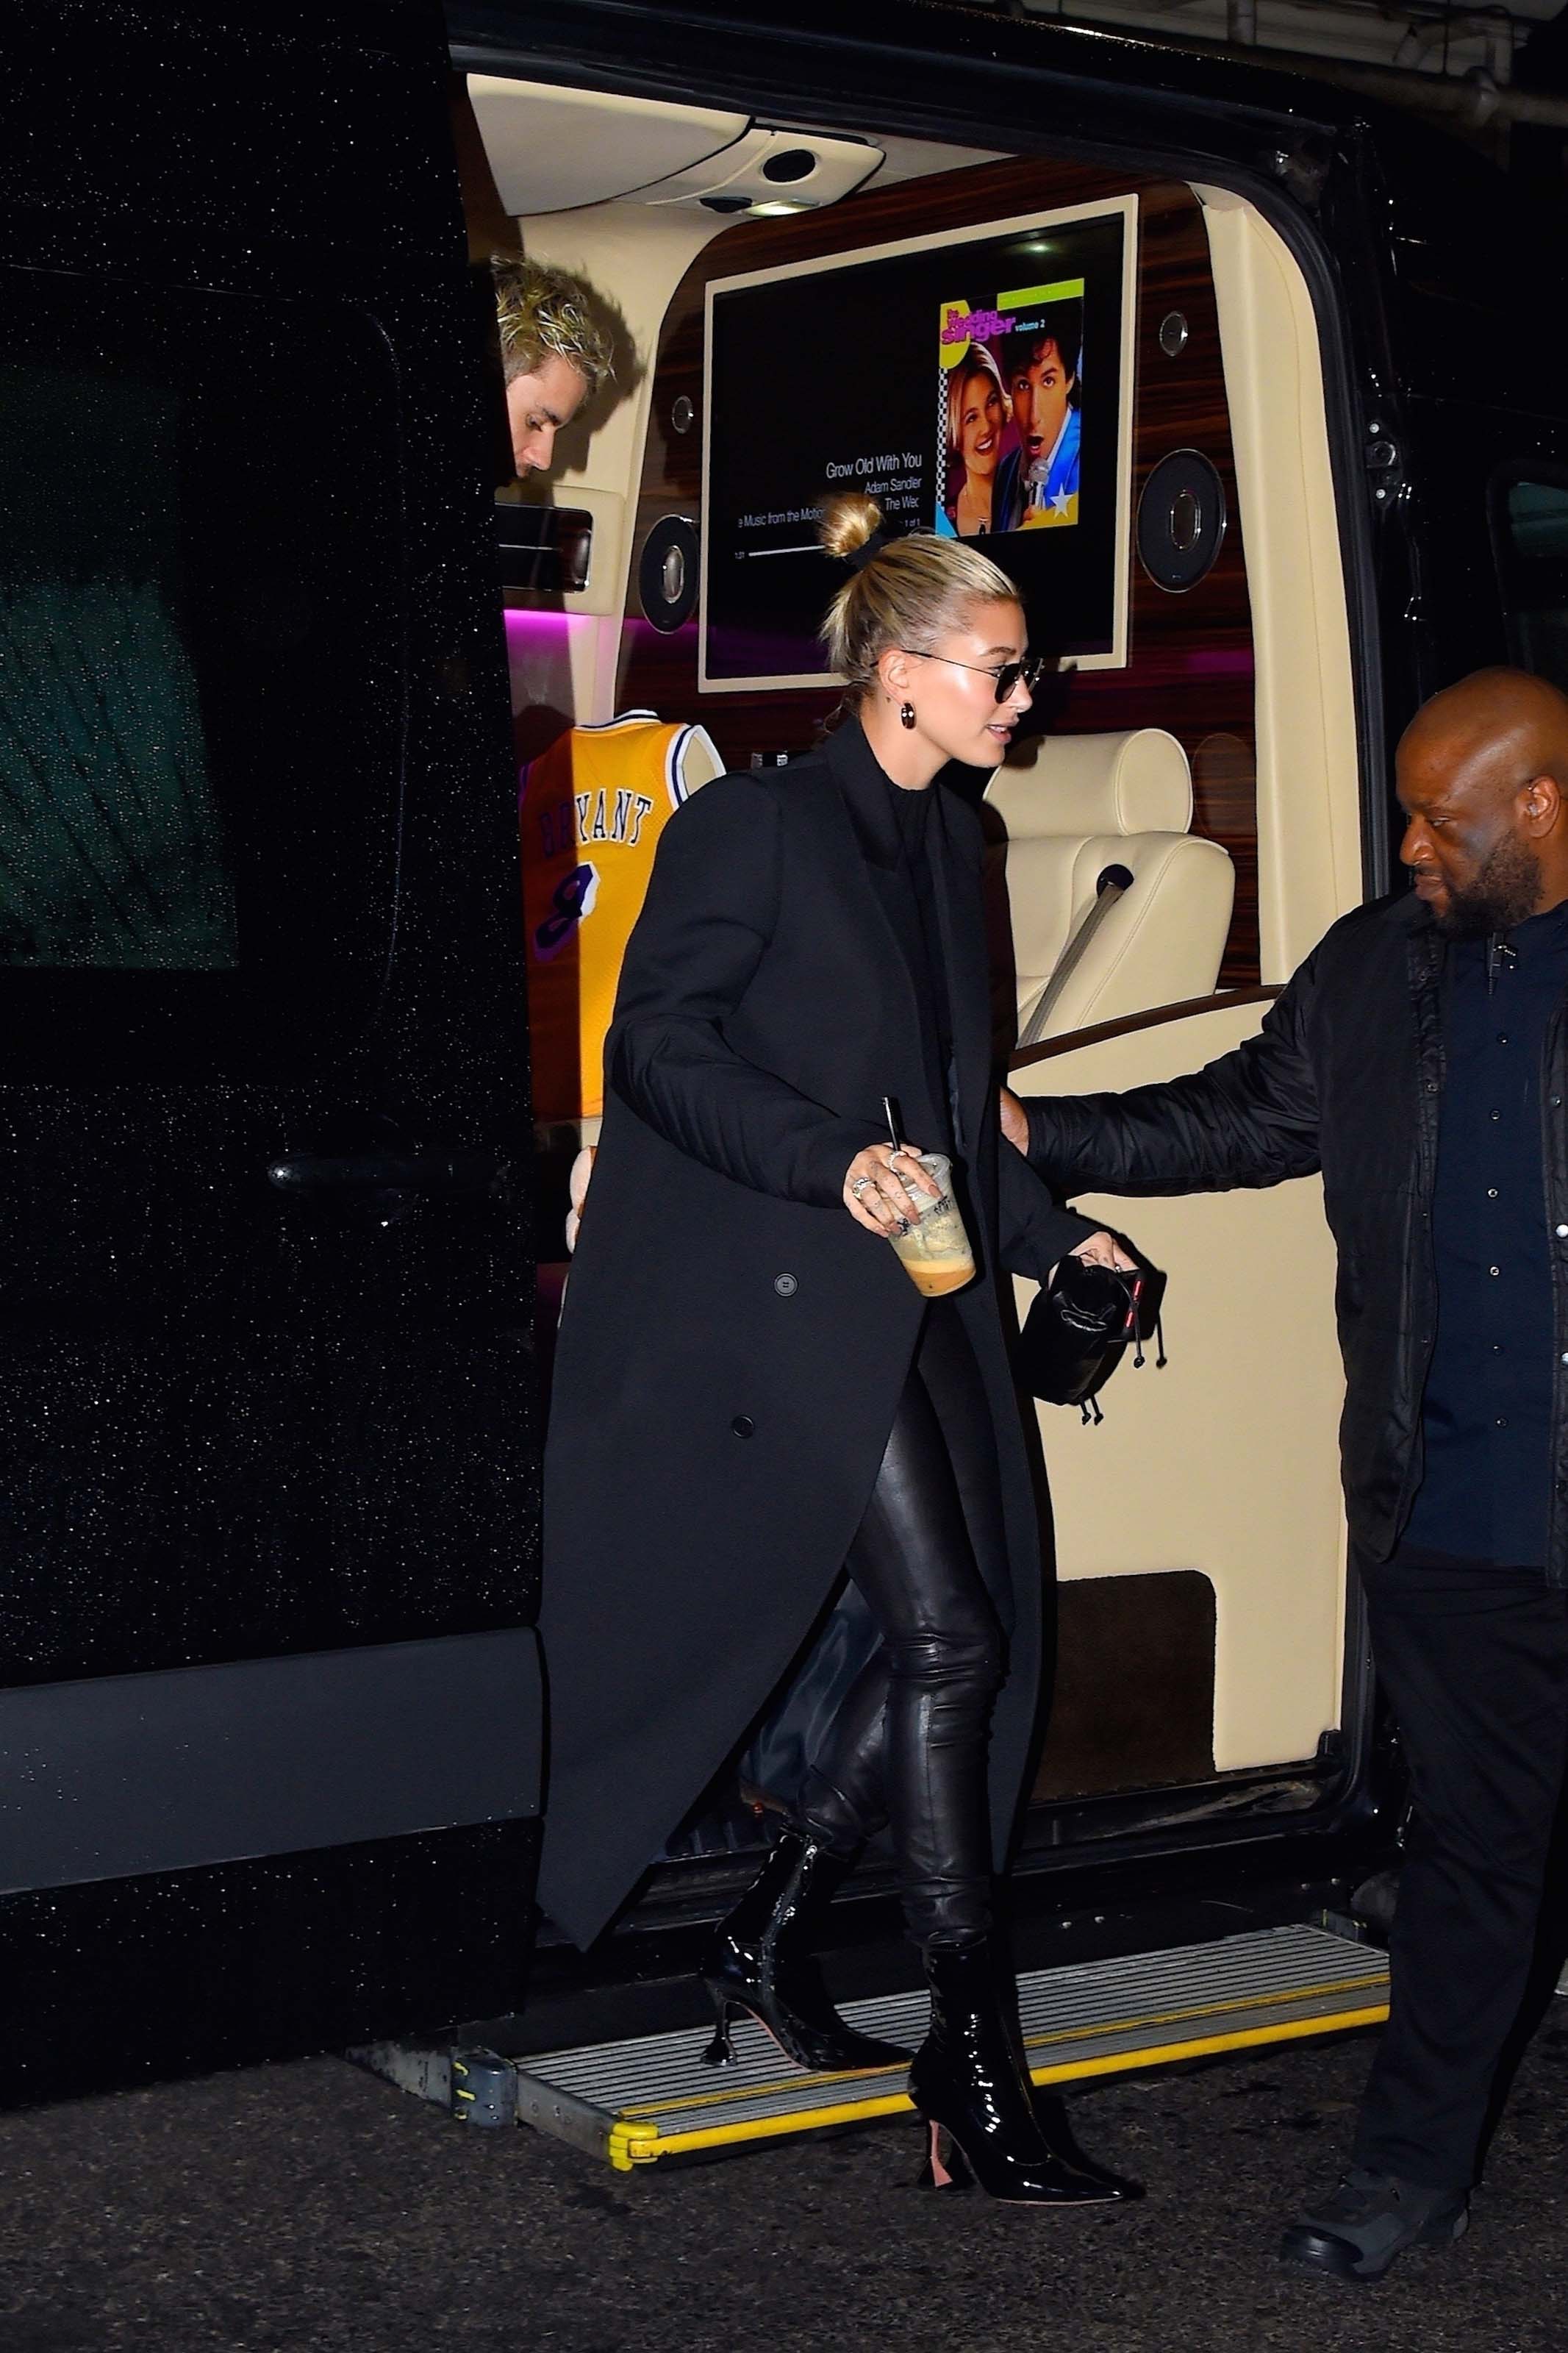 Hailey Bieber & Justin Bieber are seen running errands